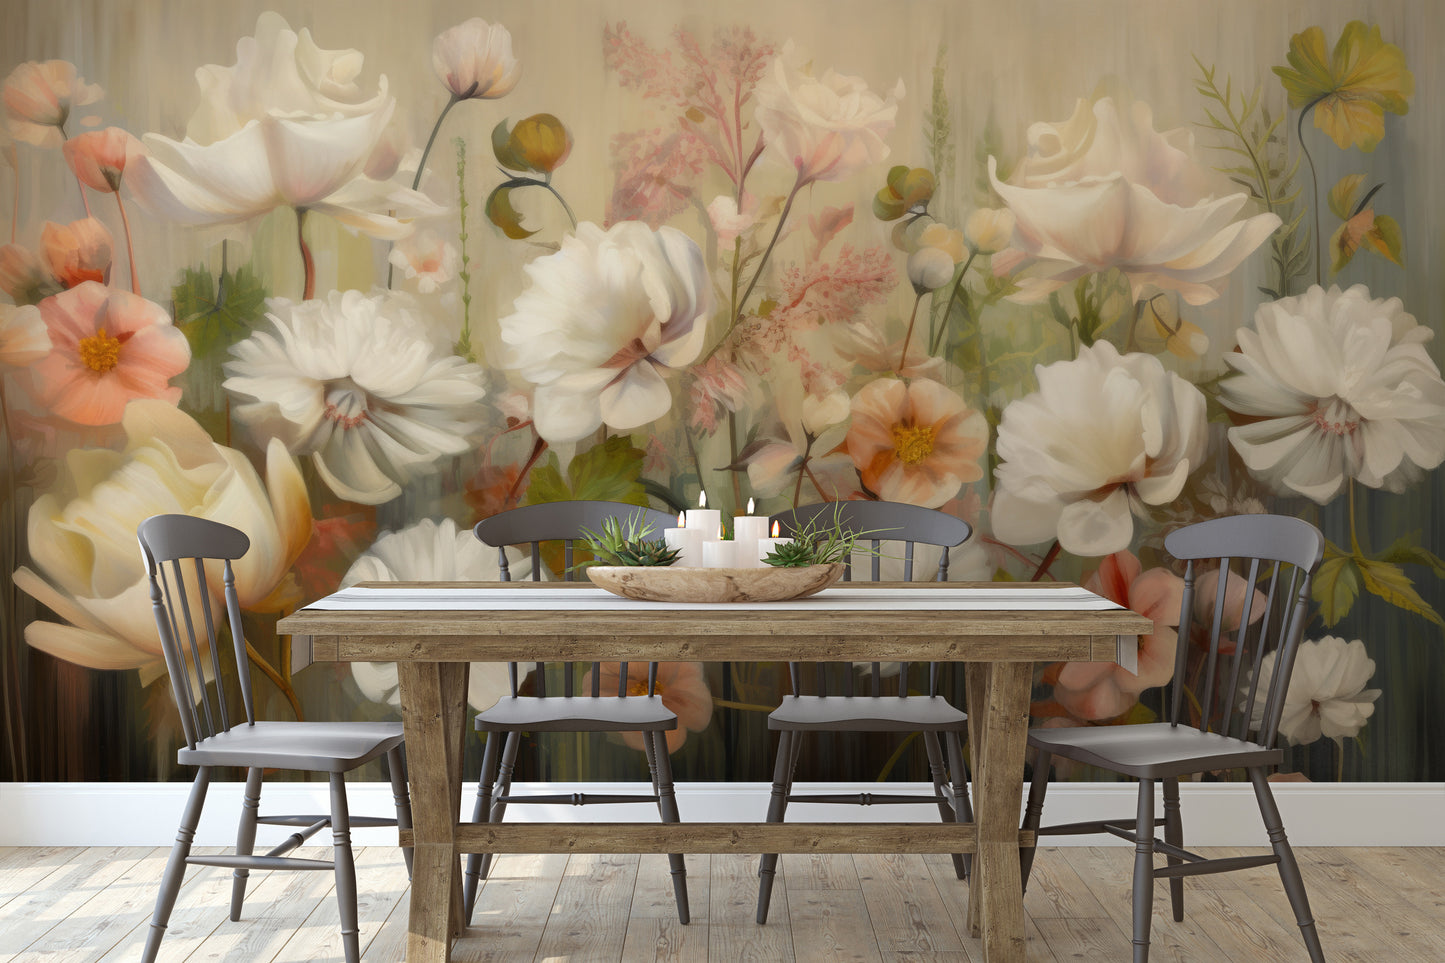 Wzór fototapety o nazwie Serene Pastel Bouquet pokazanej w kontekście pomieszczenia.